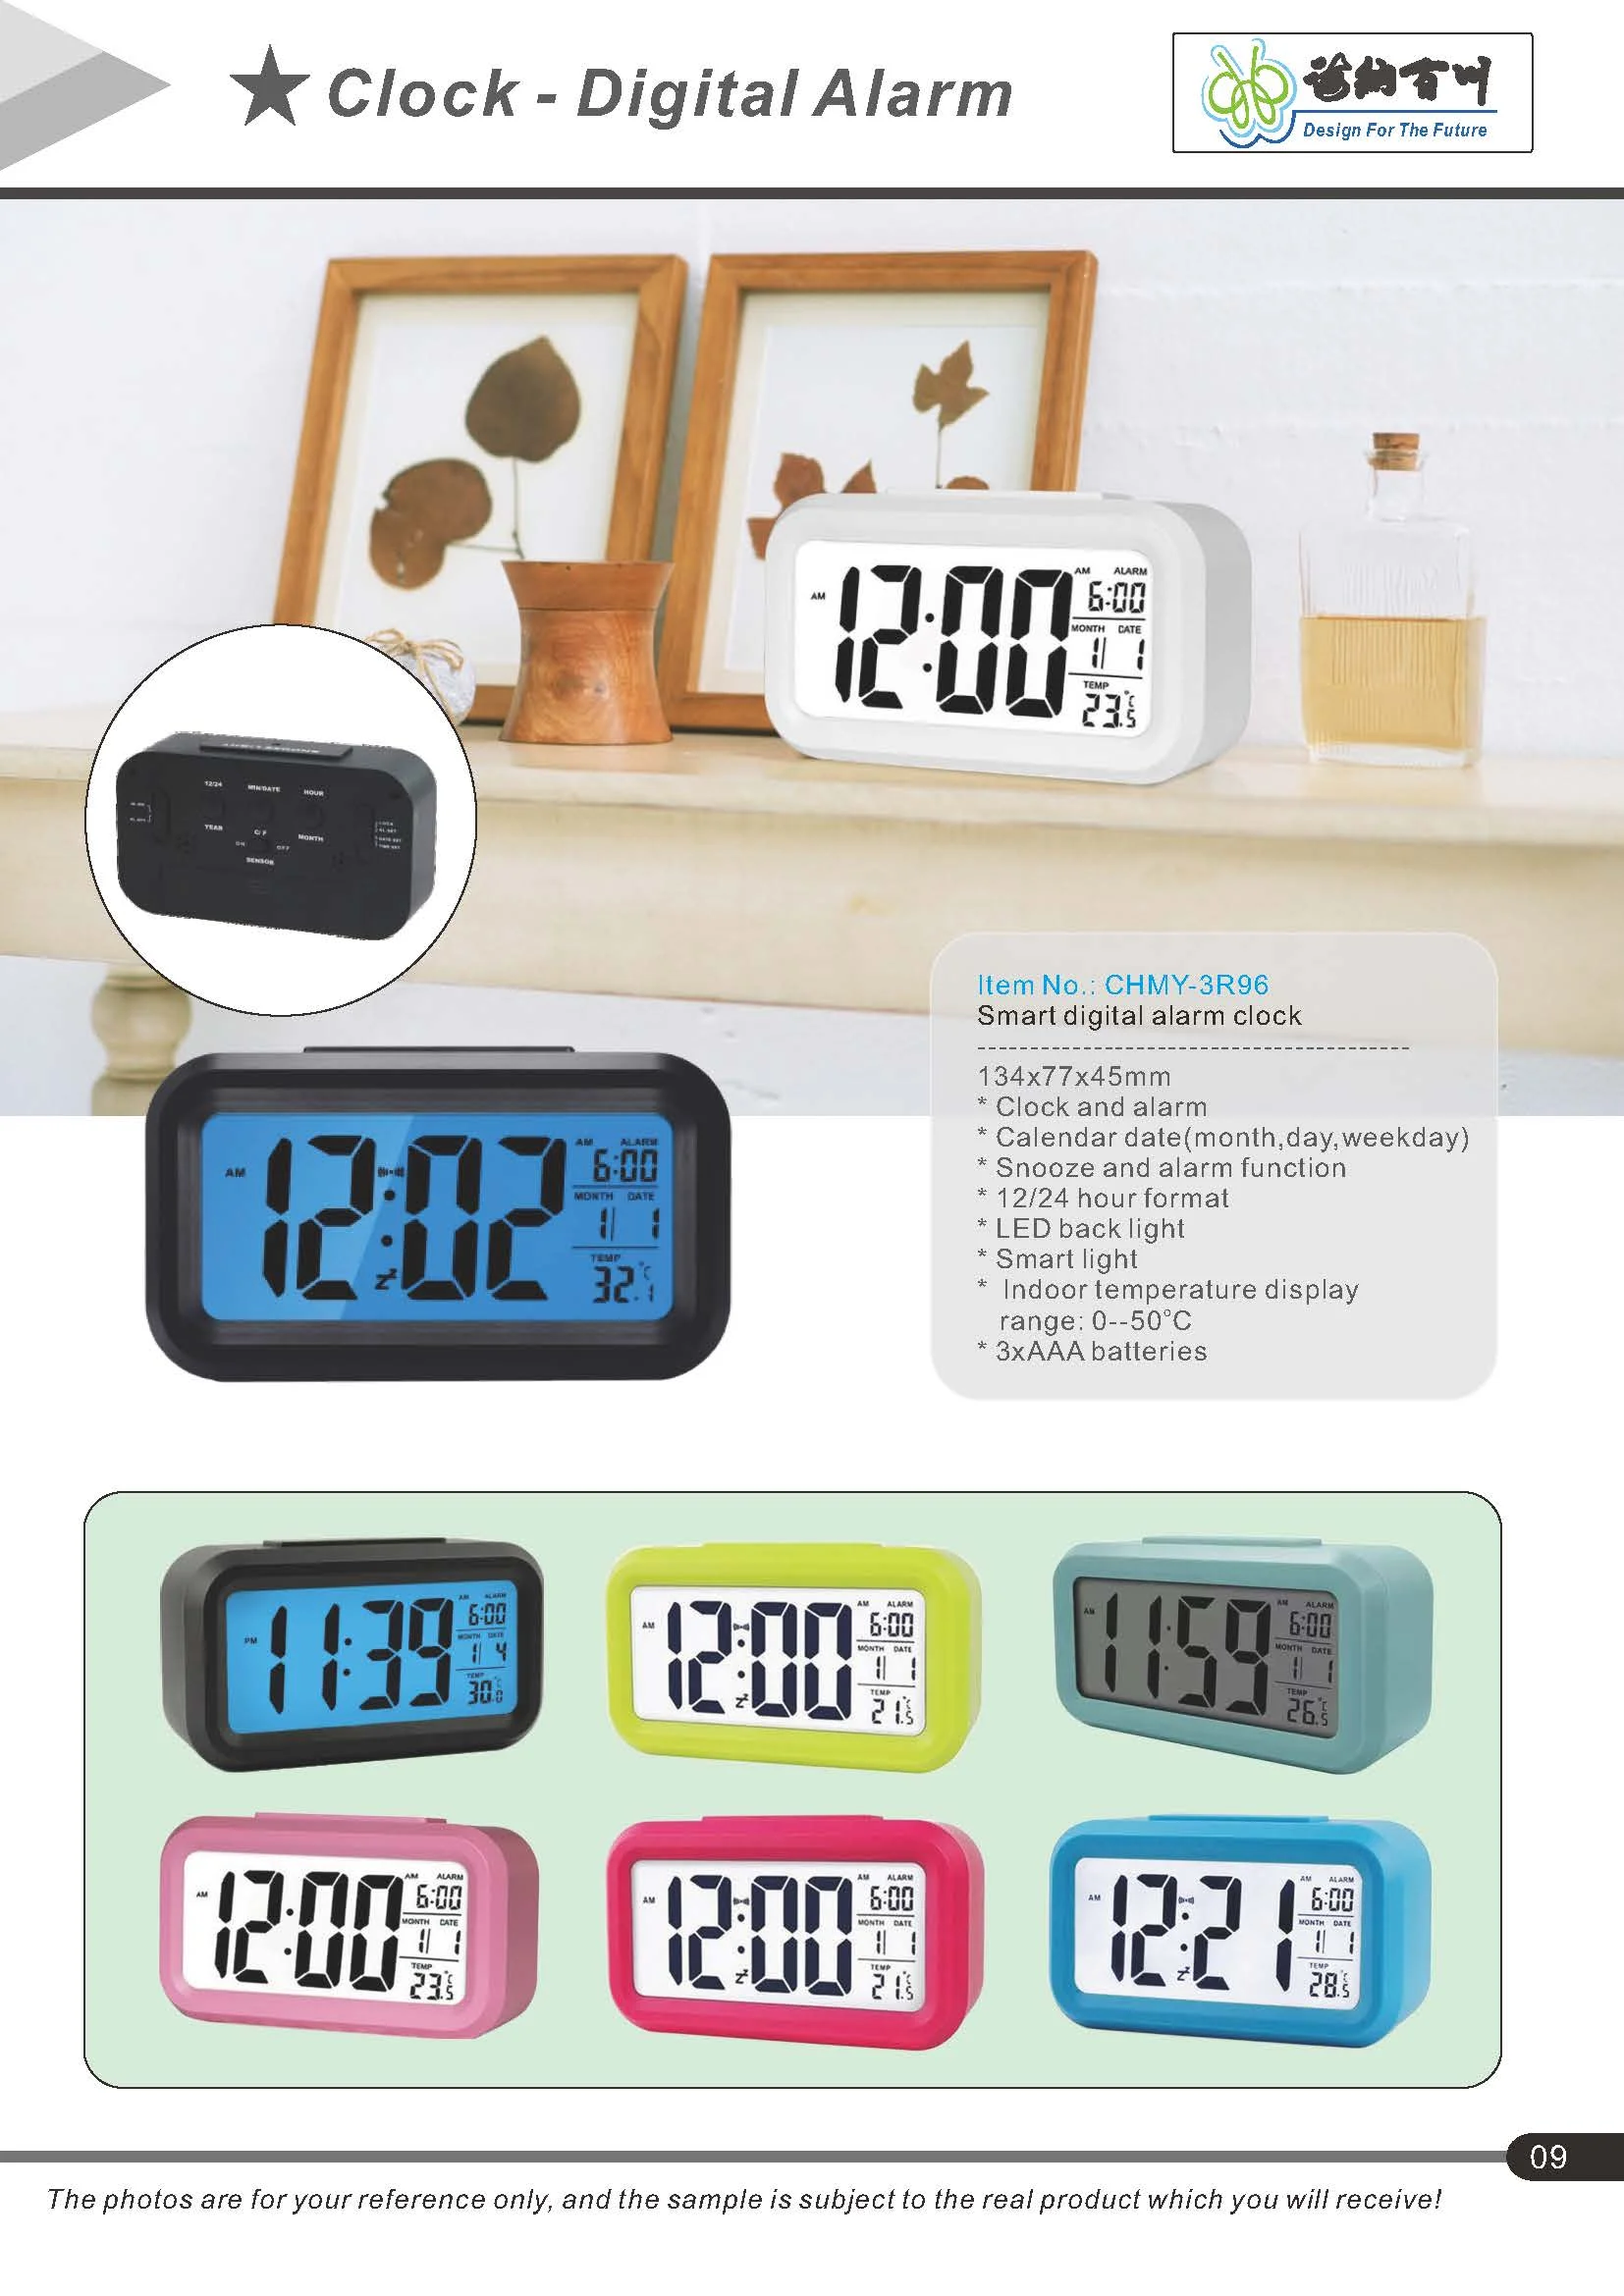 デジタルテーブルled時計時間/温度表示機能ボタン: Mode Alarm Snz 